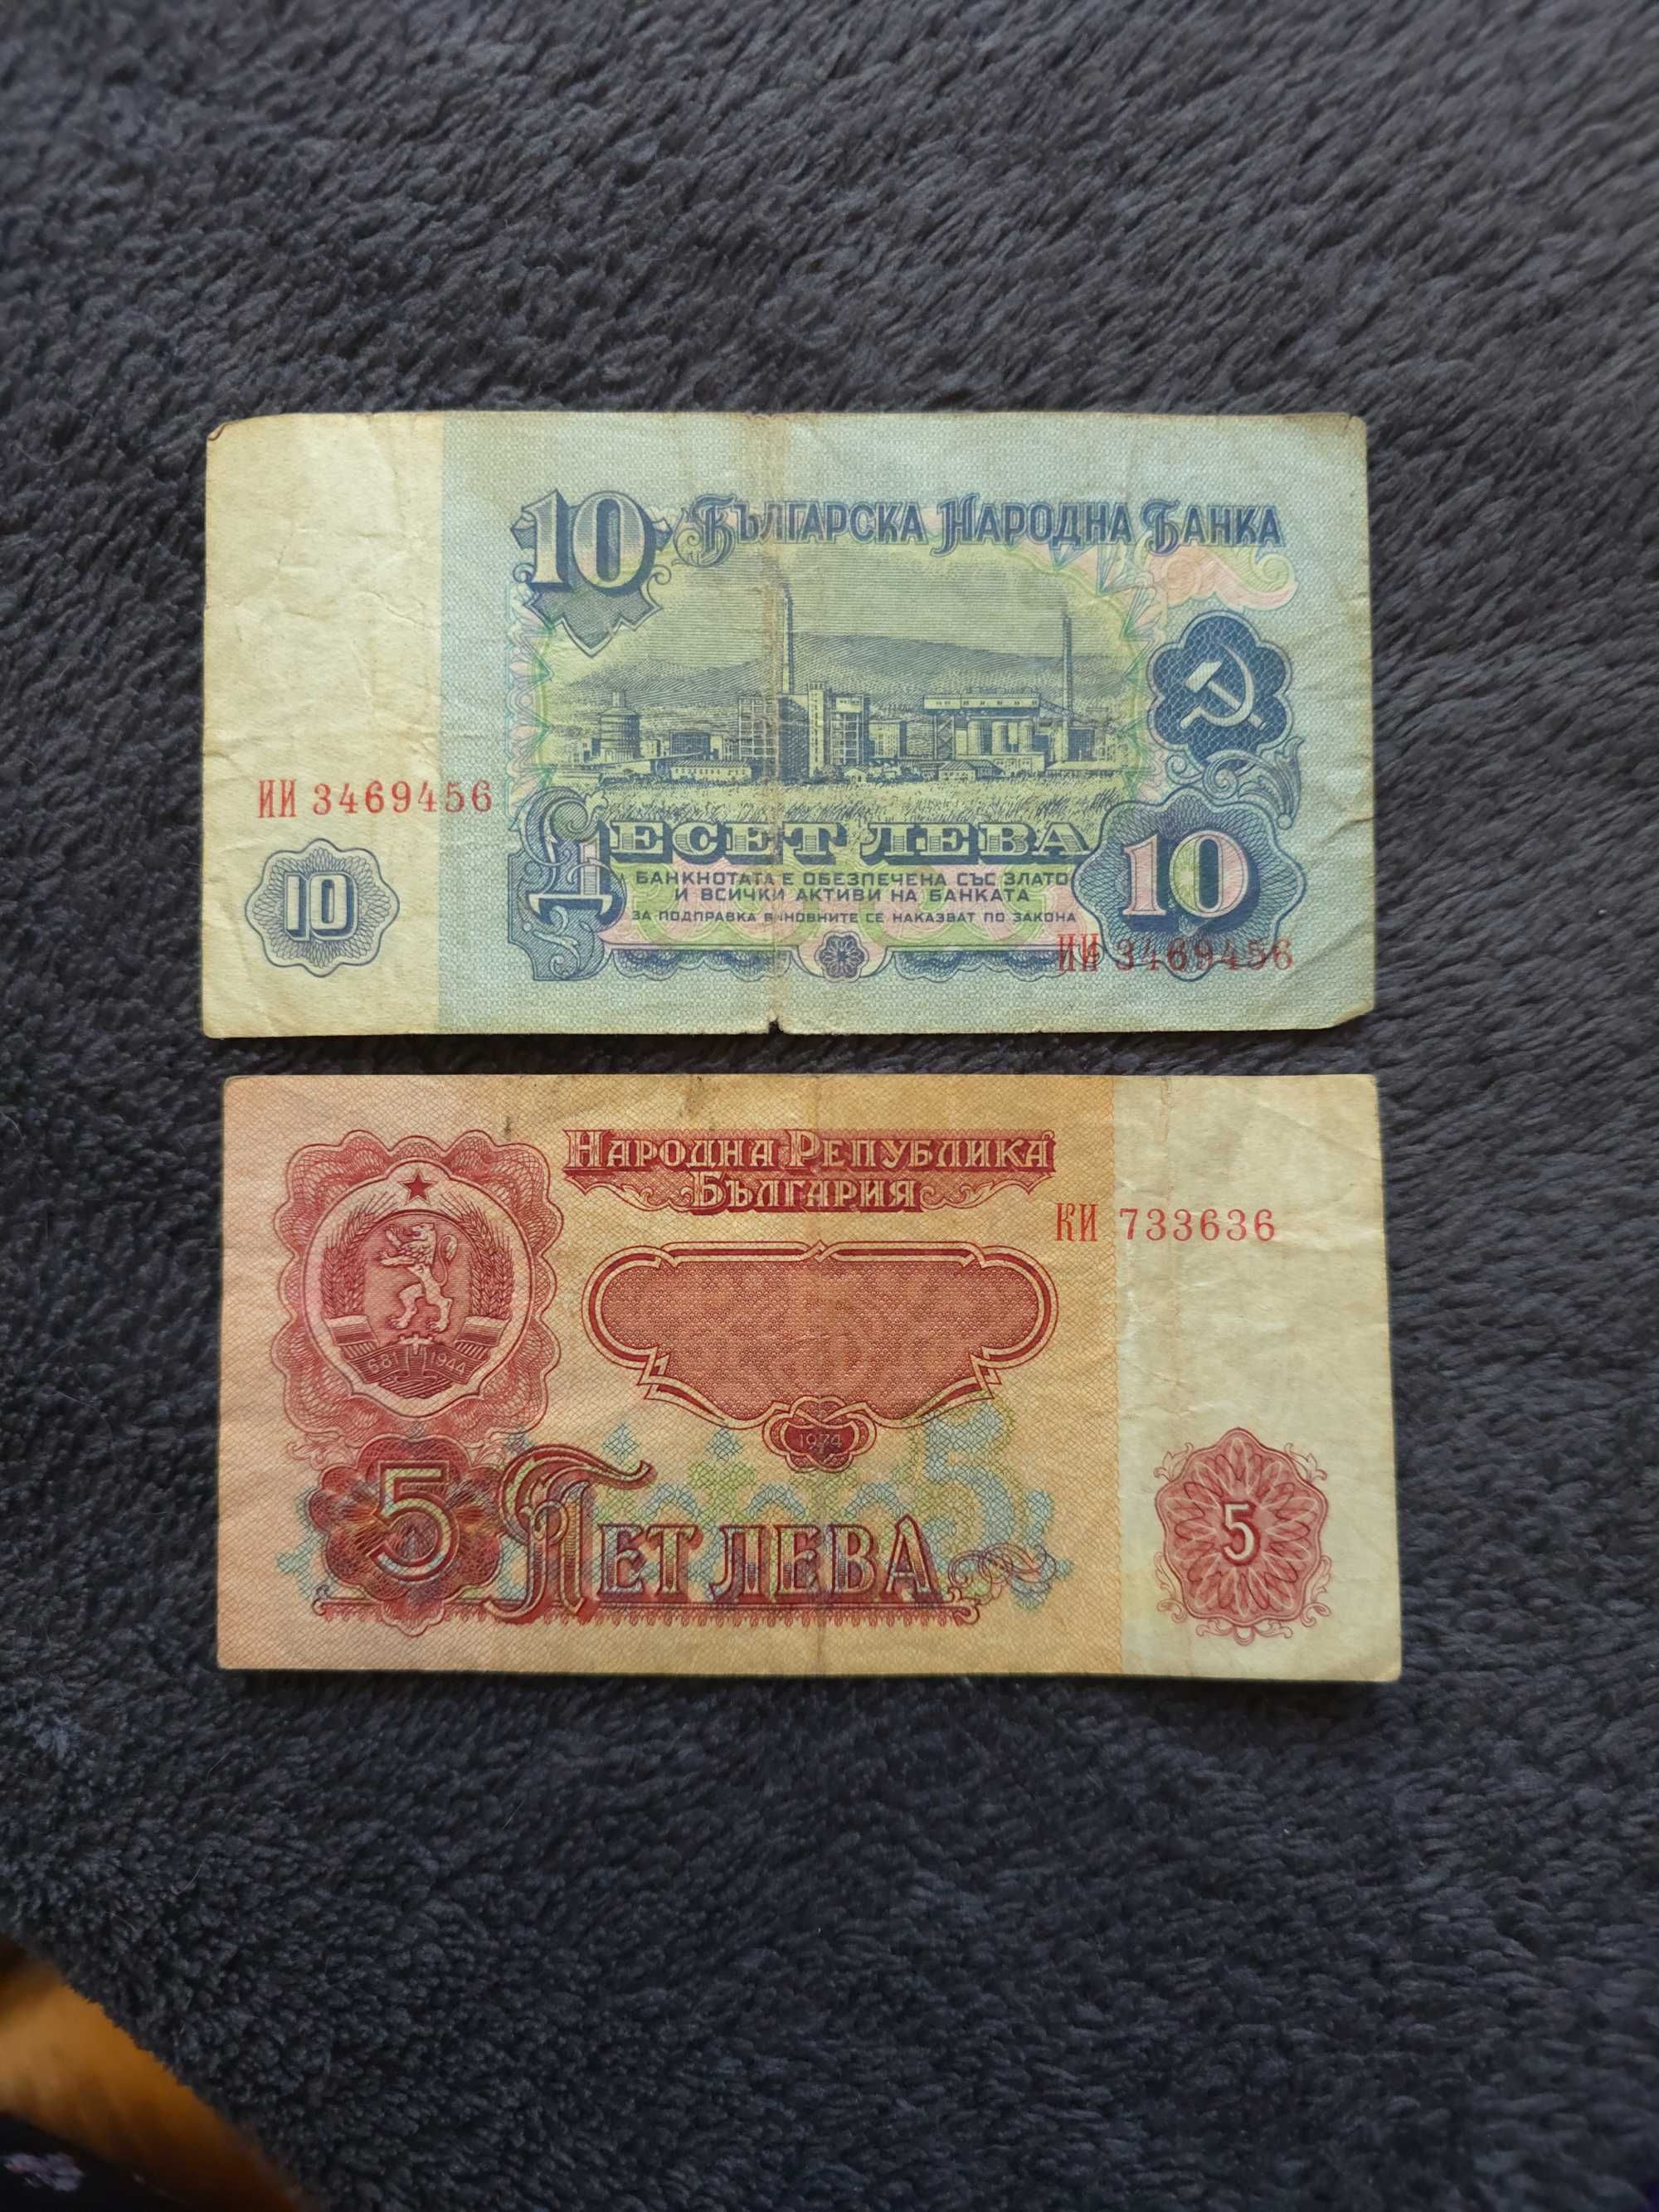 10 лева 1974г. и 5 лева 1944г.